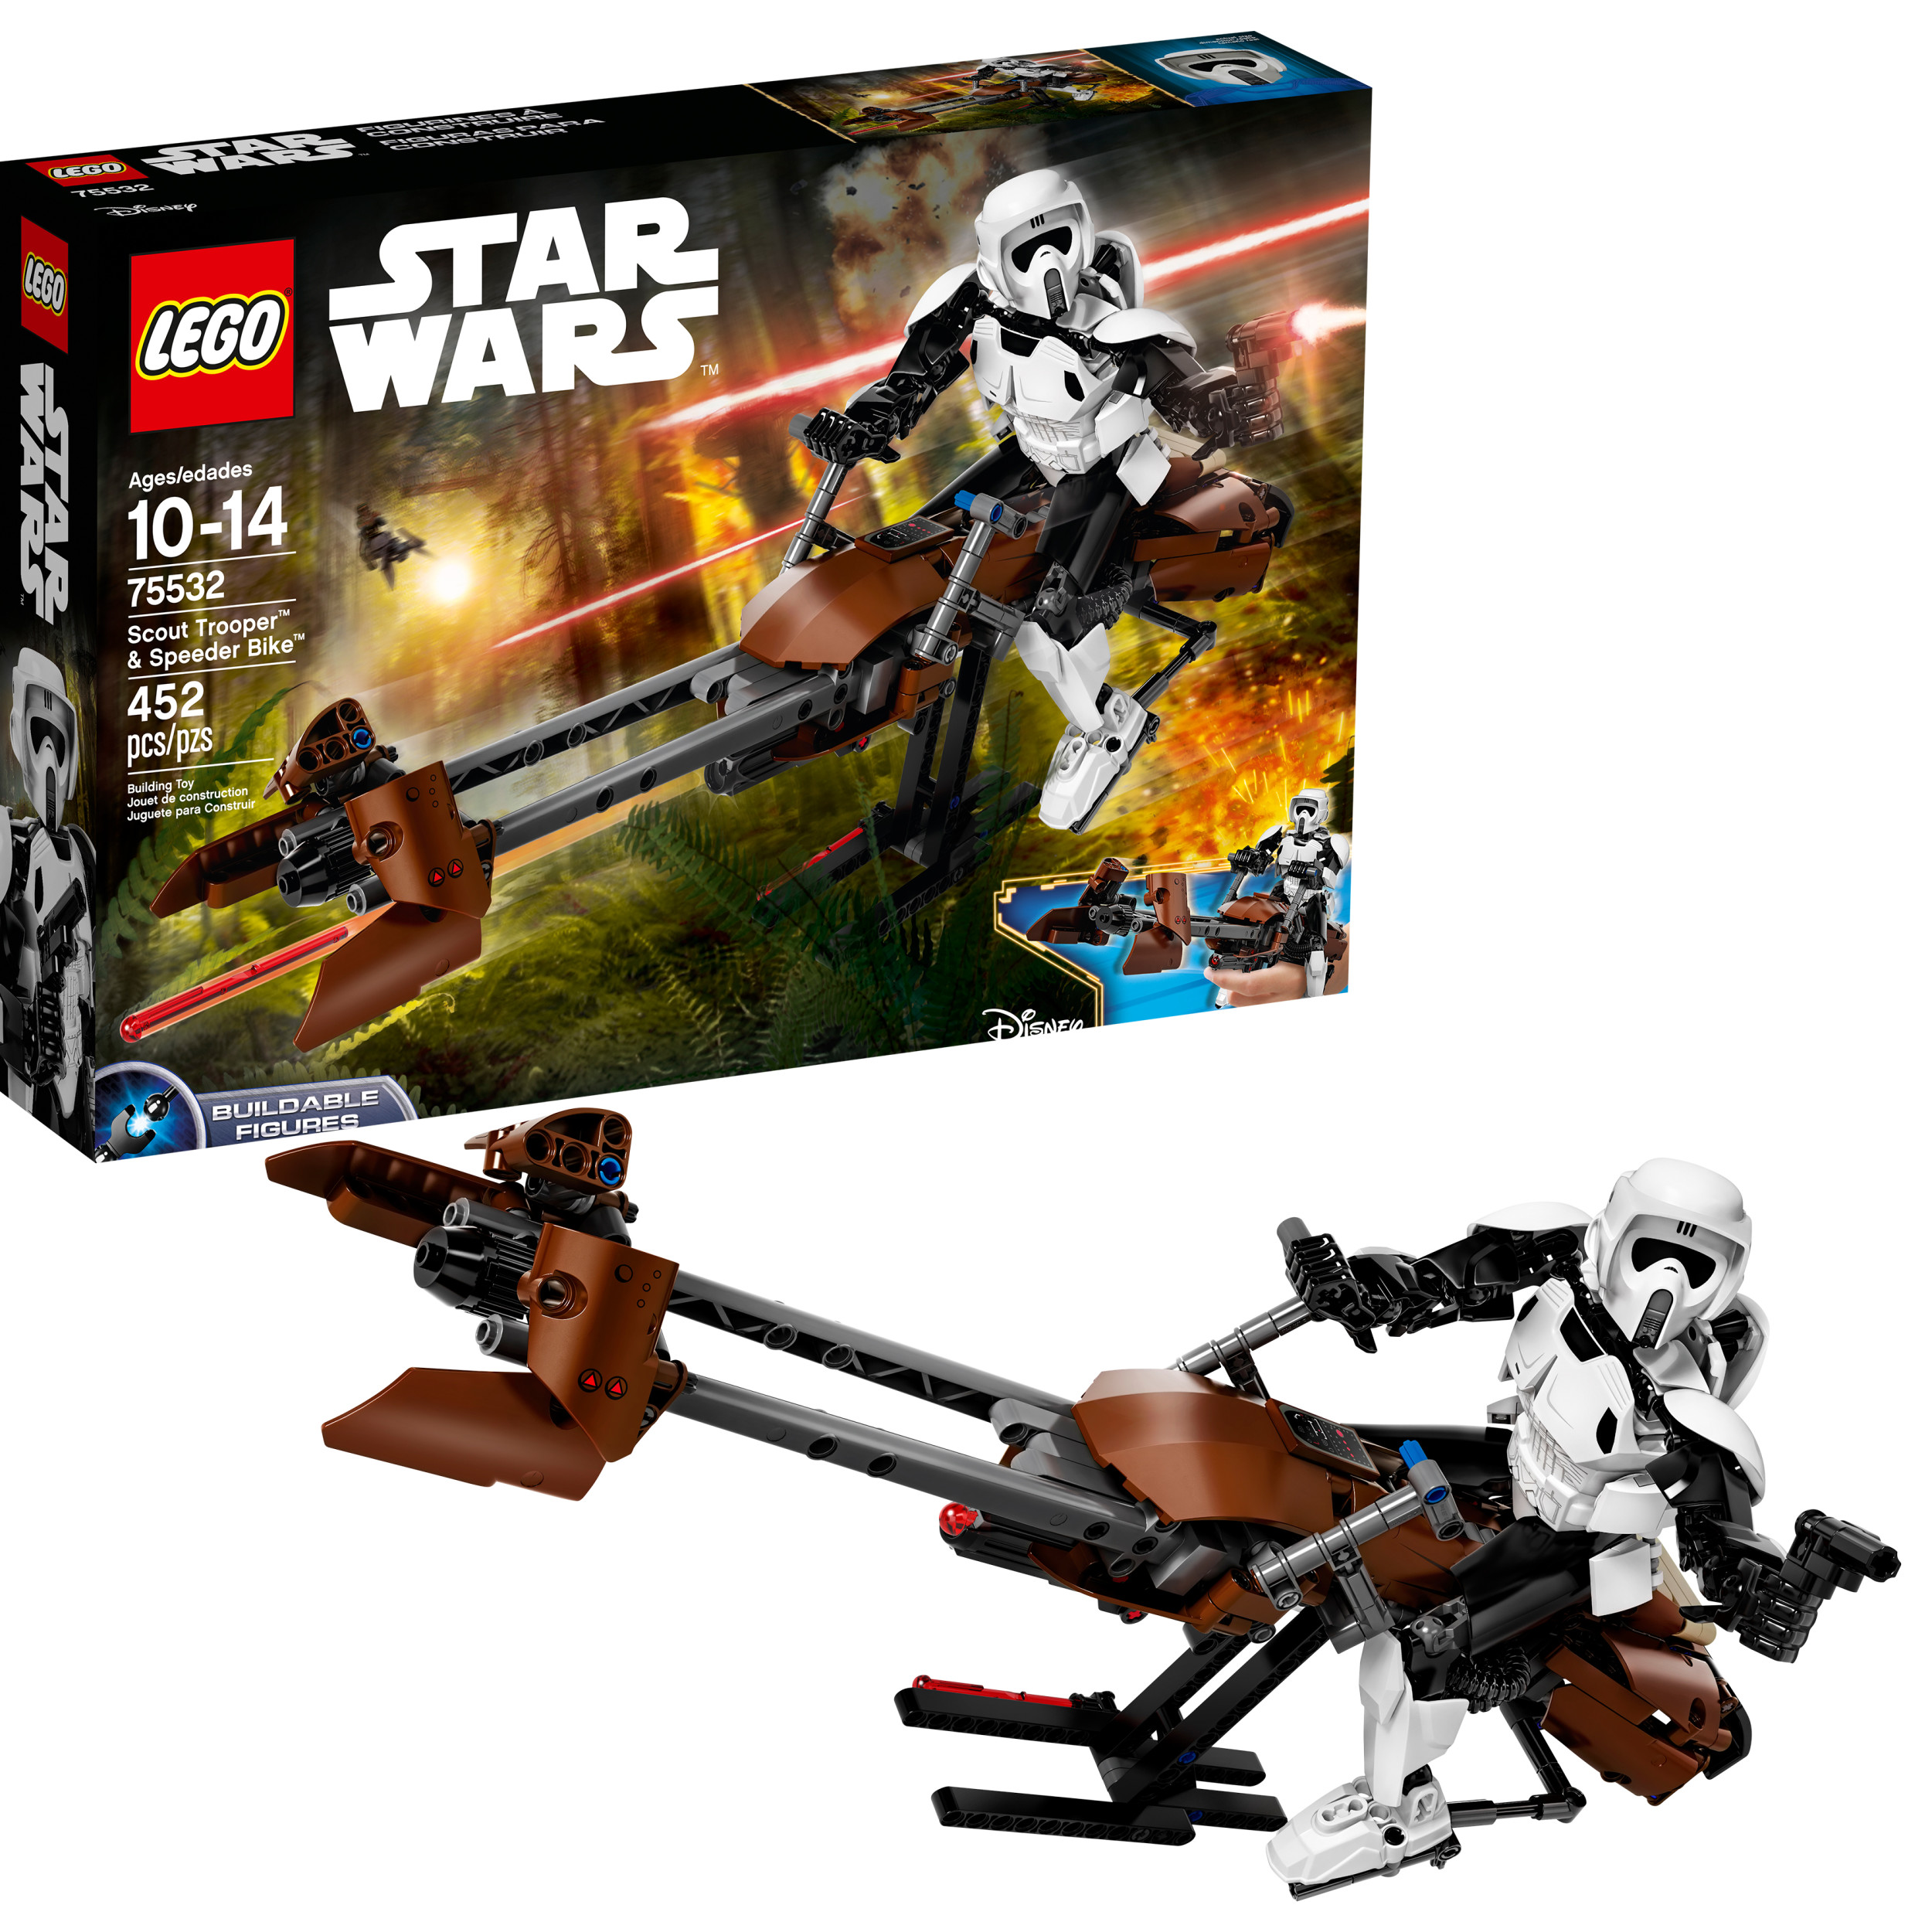 LEGO Star Wars Scout TM Trooper & Speeder Bike Only $38.46! (Reg $54.99)